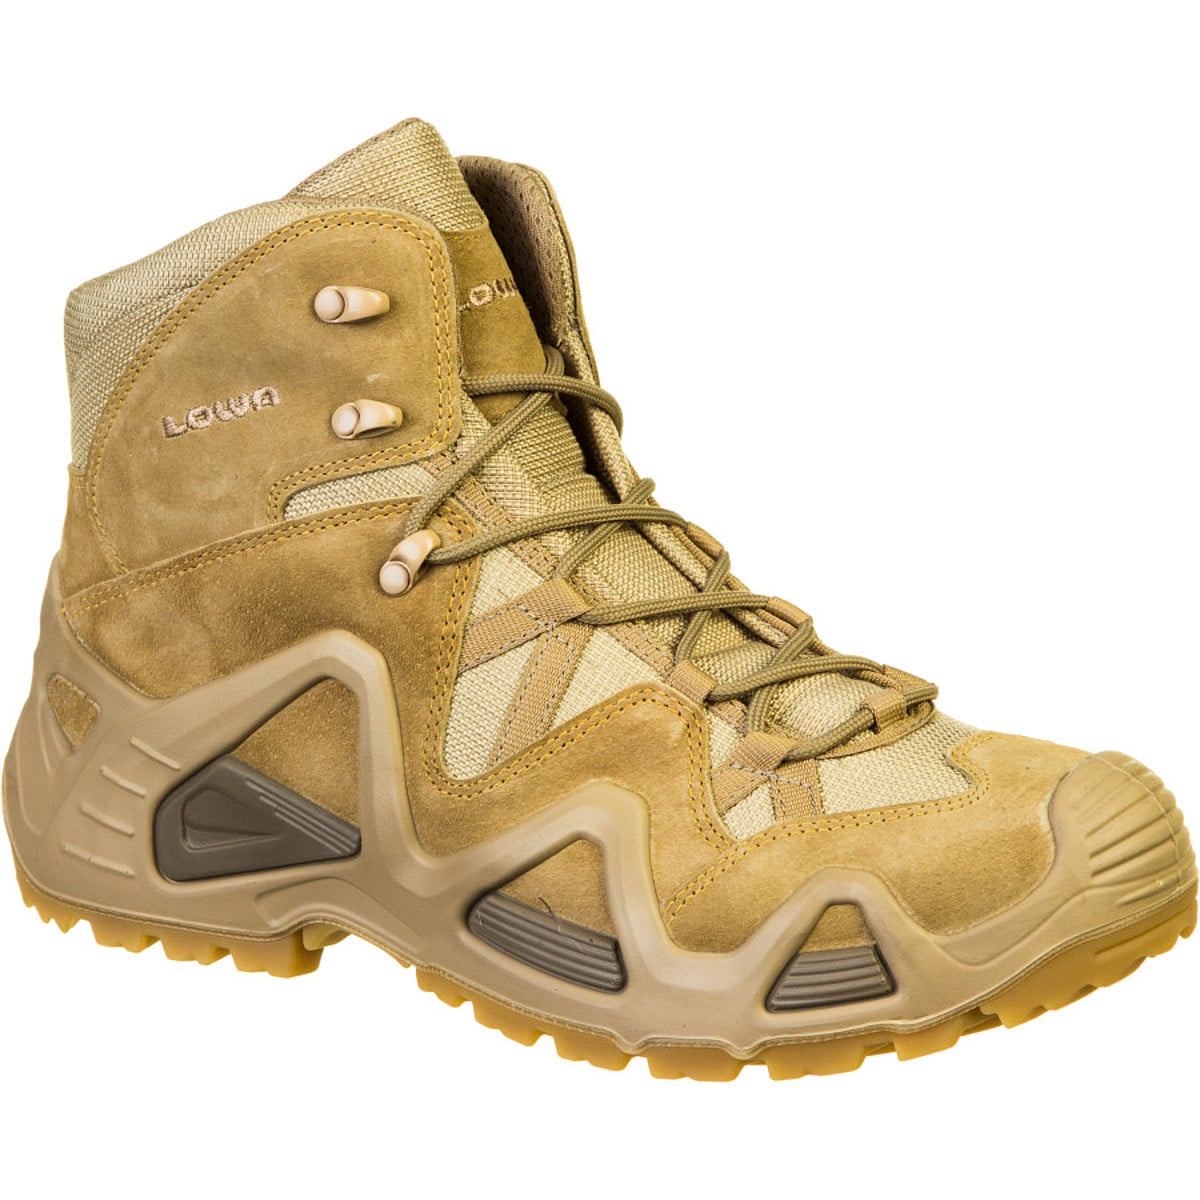 Zephyr Desert Mid TF Hiking Boot - Men